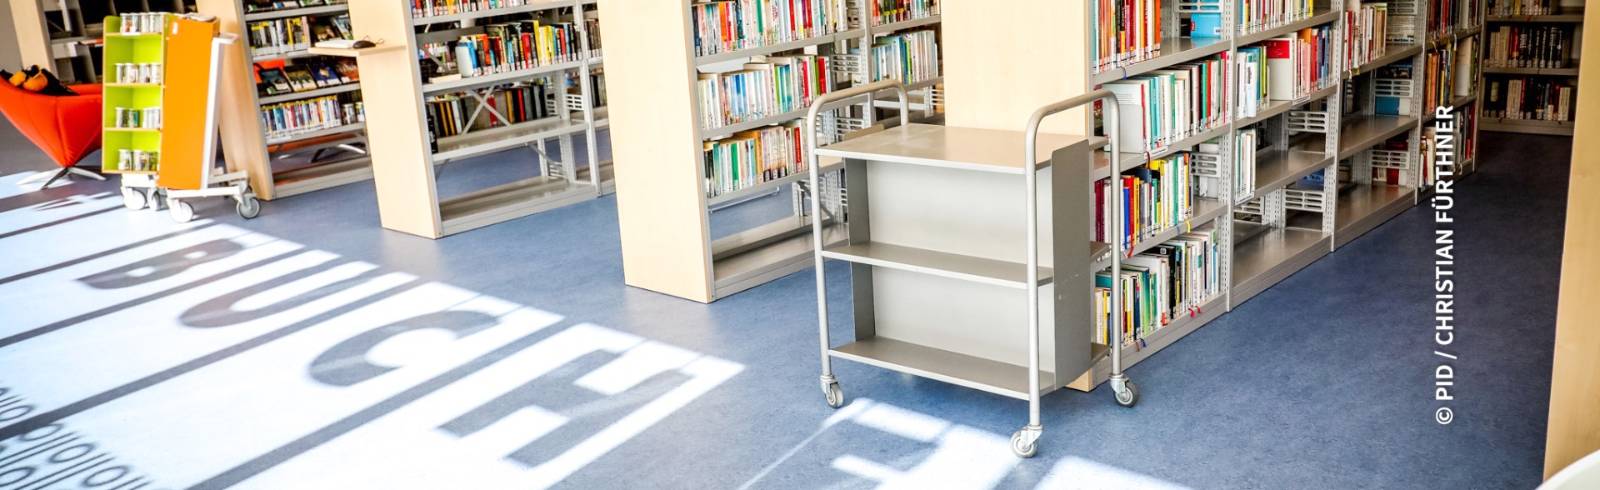 Bezirksflash: Neue Bücherei in Hietzing